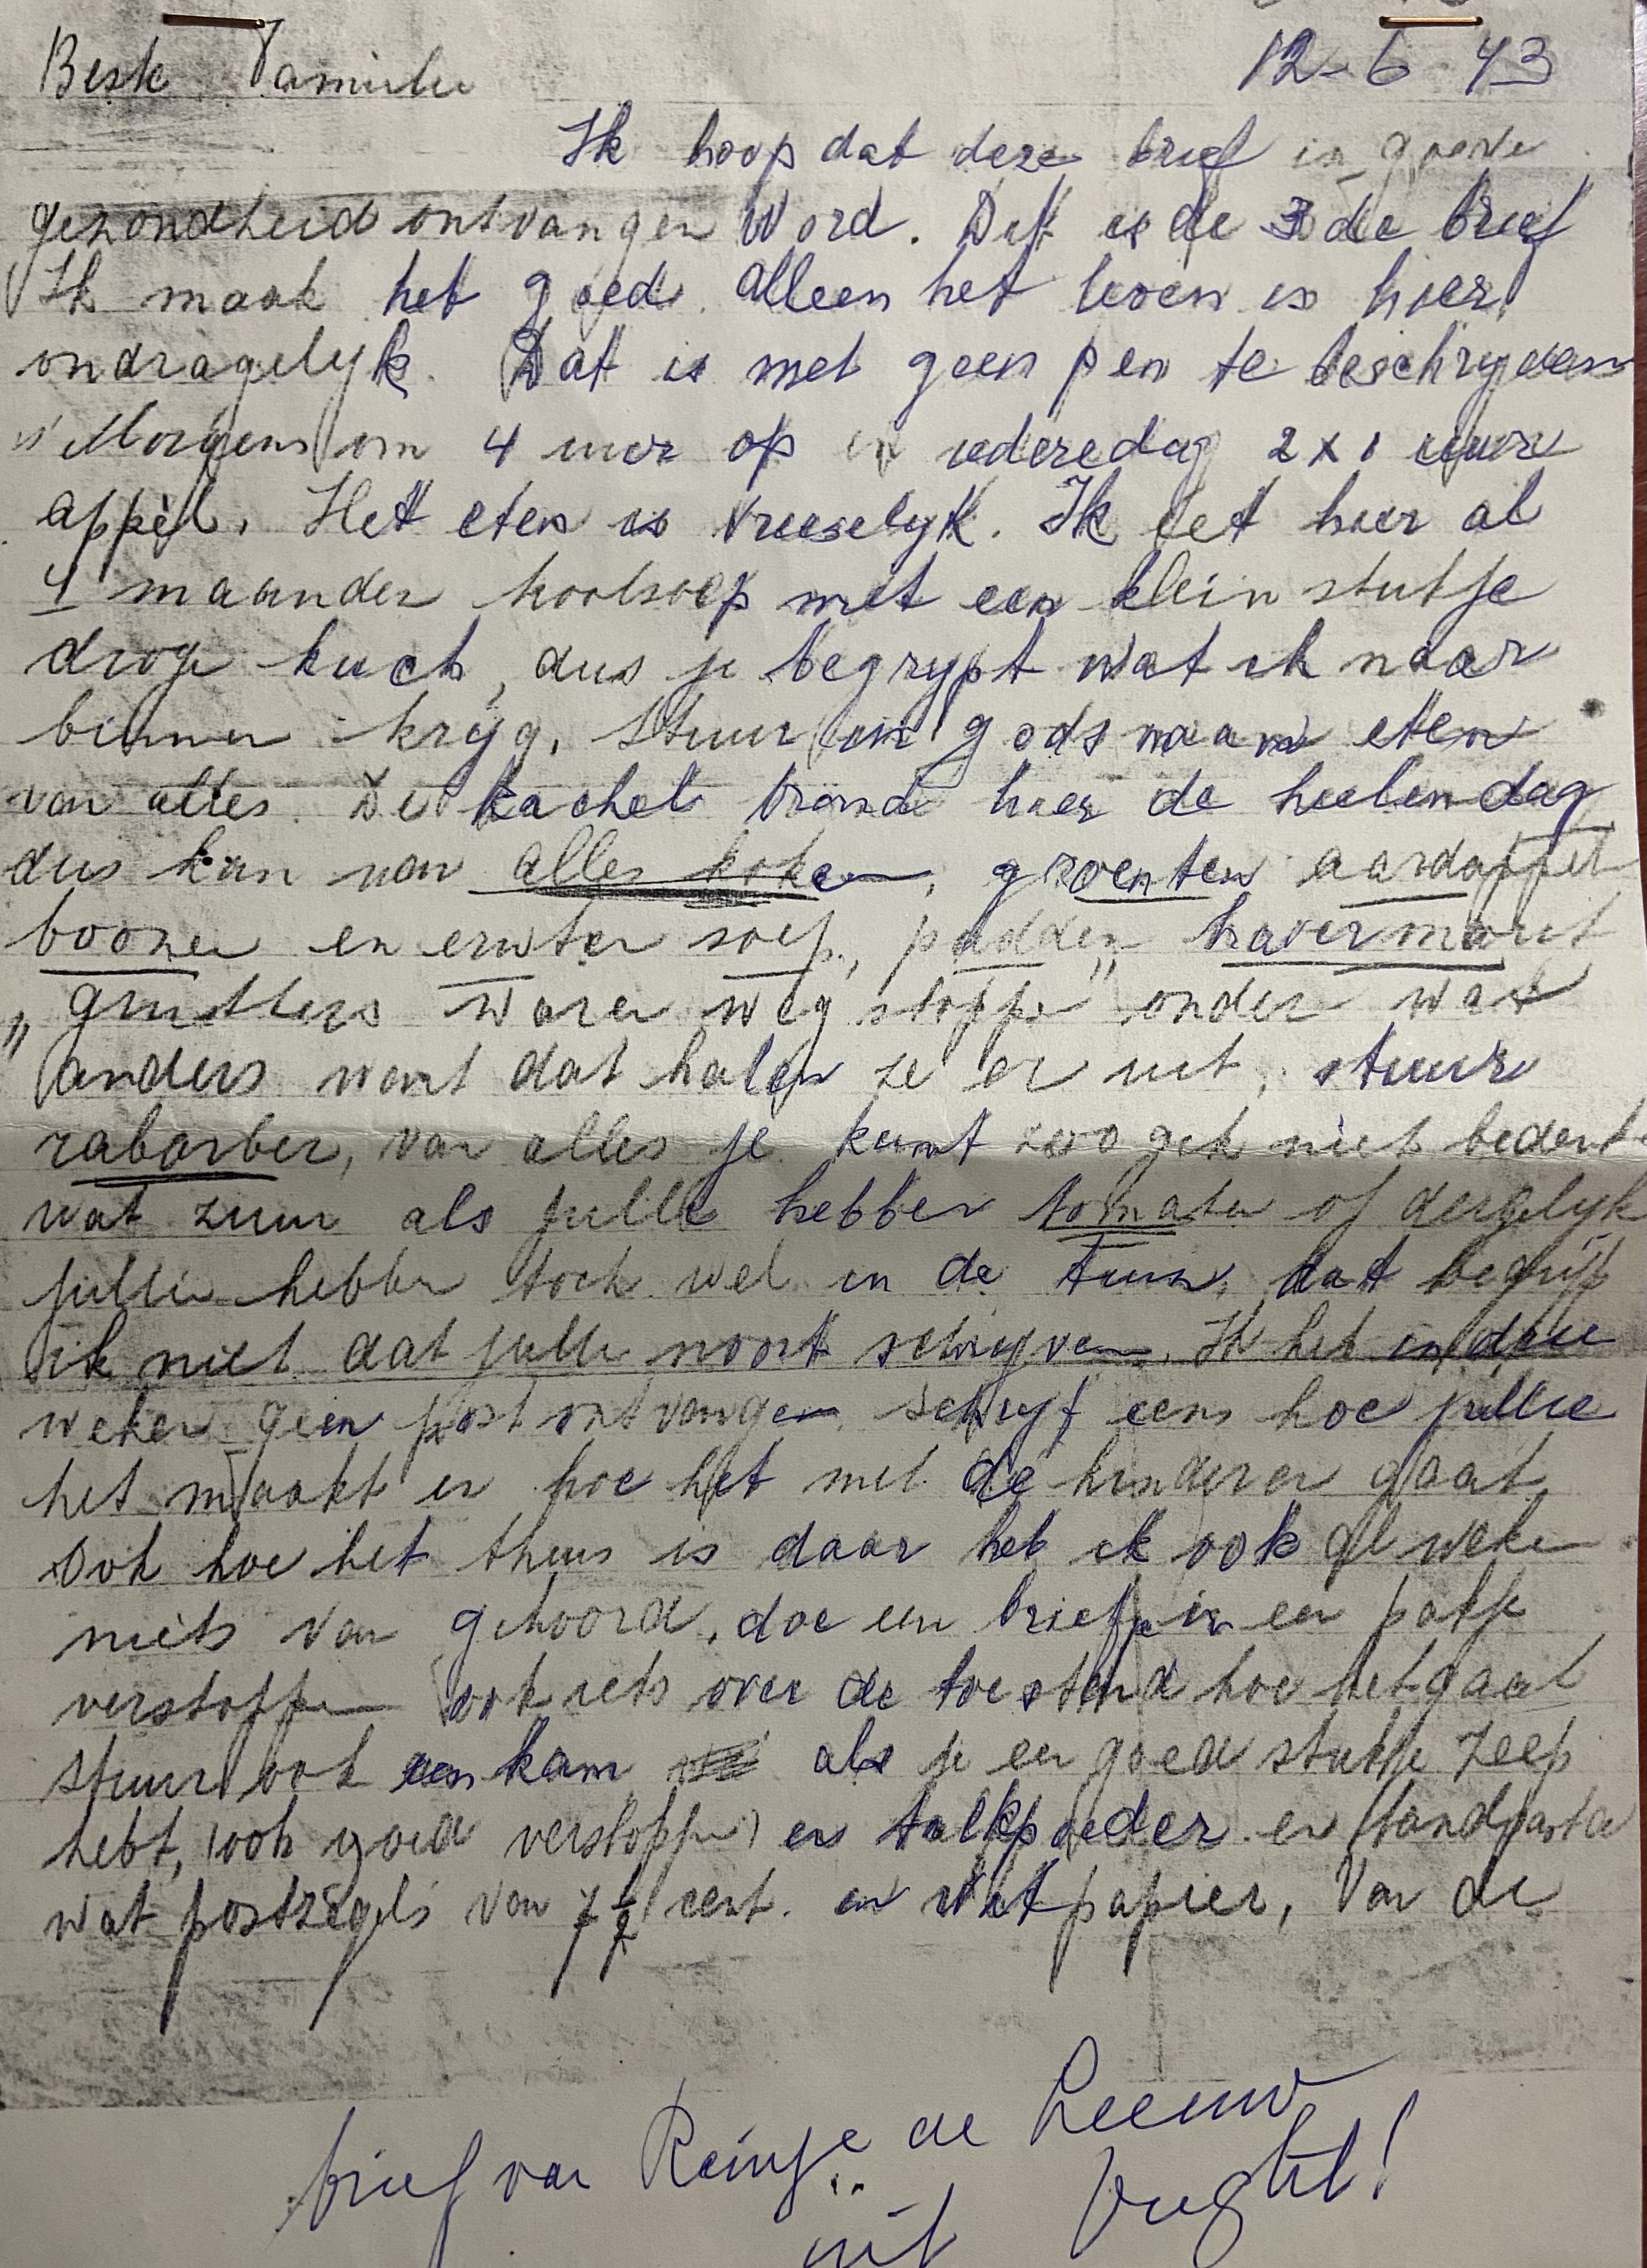 Ein Brief von Shauls Tante aus dem Konzentrationslager an seine Mutter Rosa. Sie bittet um Dinge, die helfen sollen, mit den Entbehrungen dort fertig zu werden.